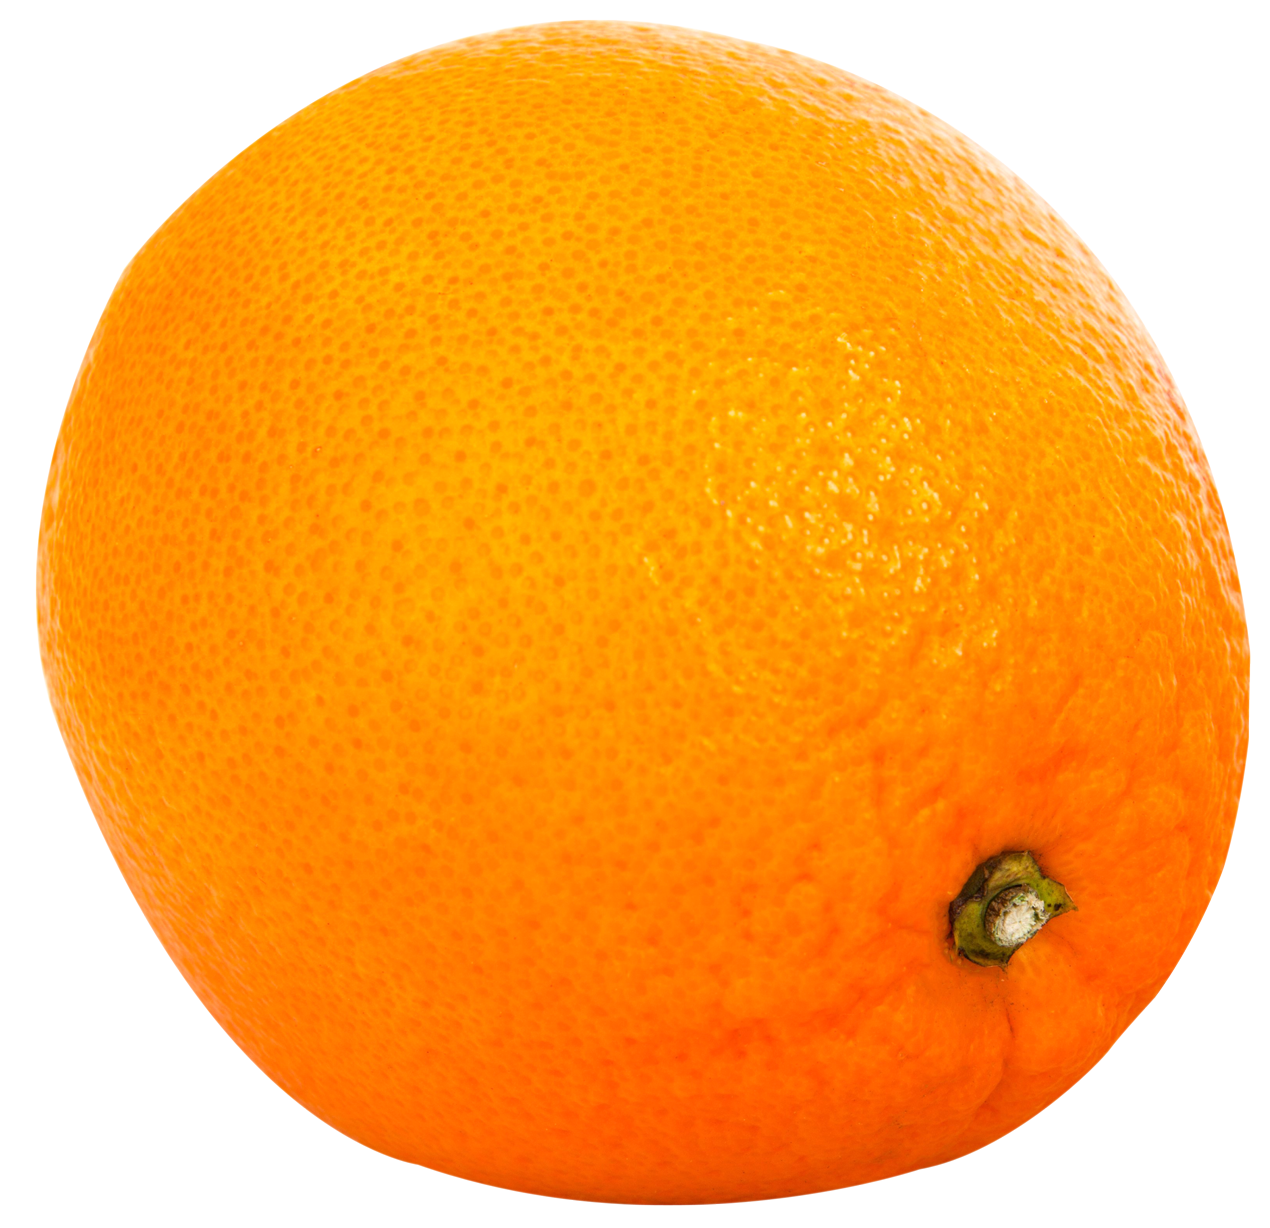 Orange Png 1270 X 1228